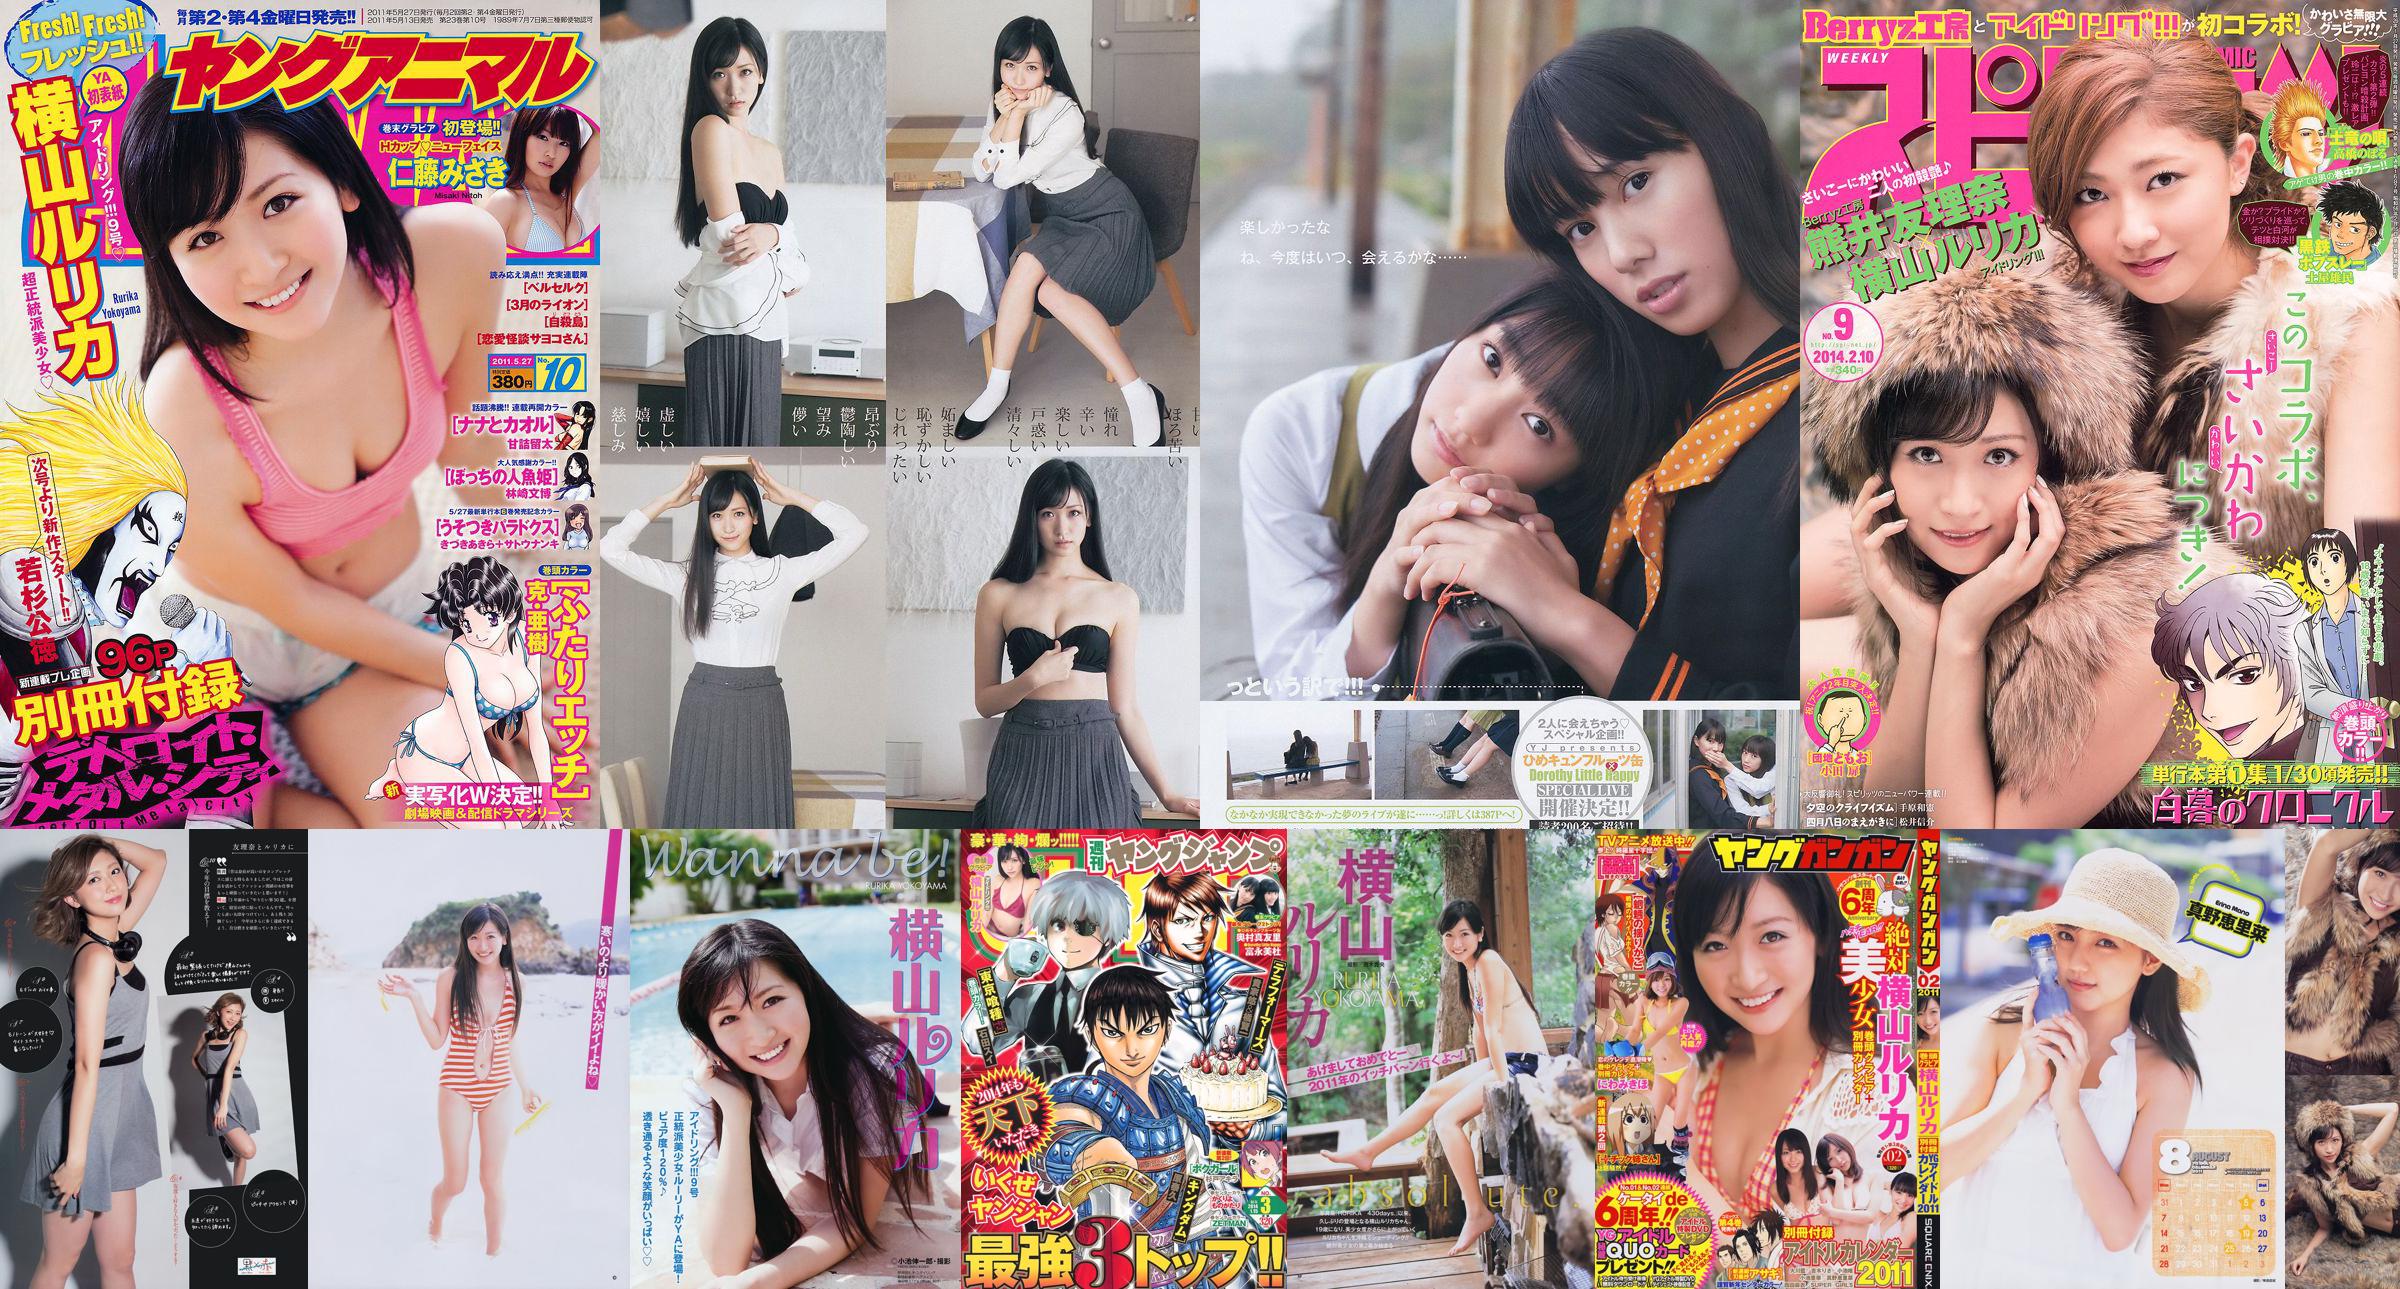 Rurika Yokoyama Mayuri Okumura Mimori Tominaga [Salto joven semanal] 2014 No.03 Foto Mori No.2cbd5a Página 5